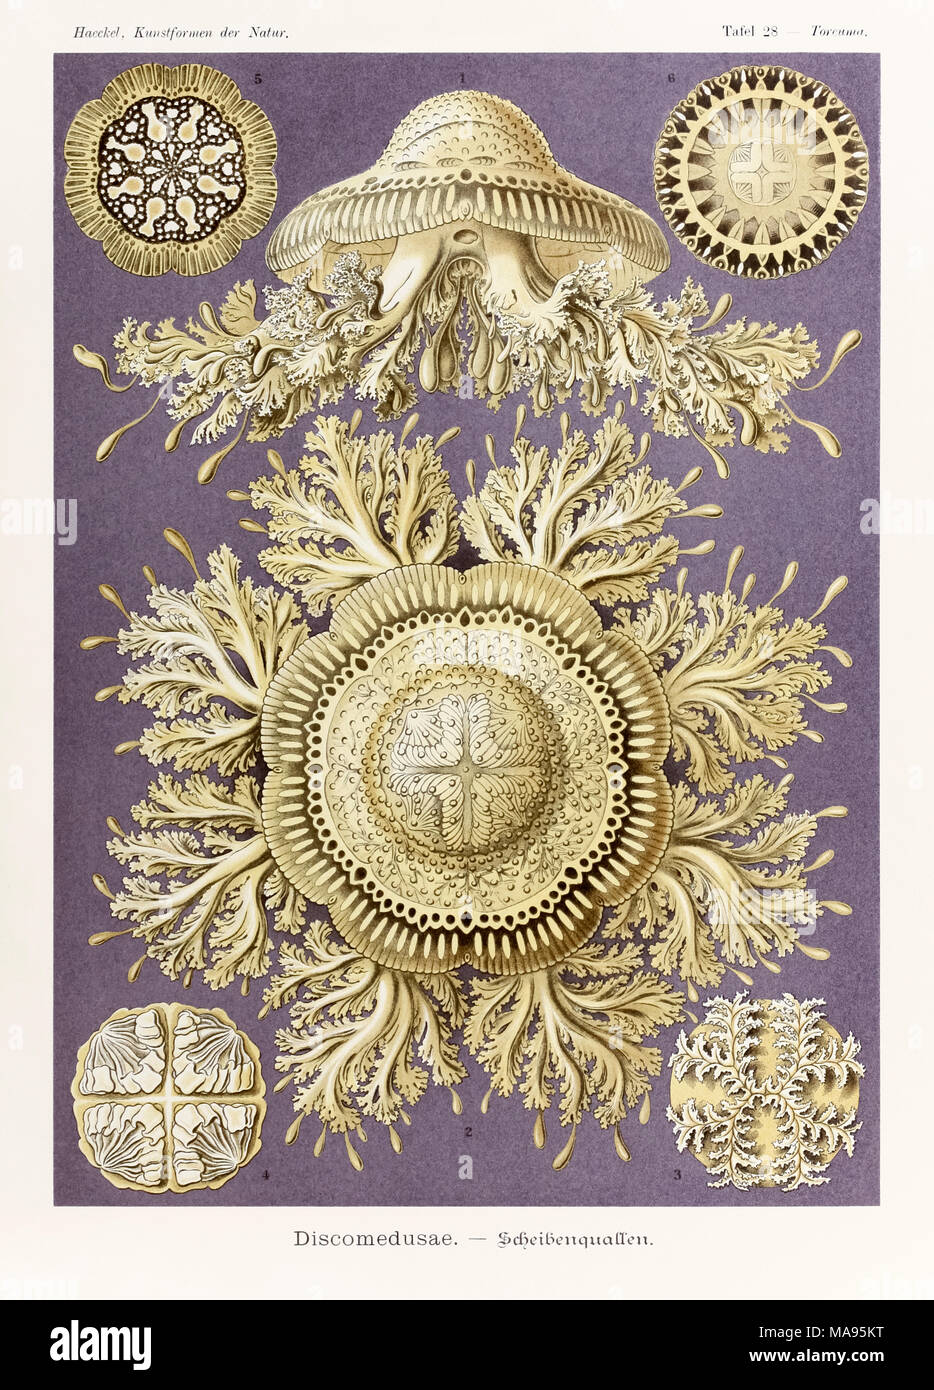 Platte 28 Toreuma Discomedusae bellagemma, von 'Kunstformen der Natur' (Kunstformen in der Natur), illustriert von Ernst Haeckel (1834-1919). Weitere Informationen finden Sie unten. Stockfoto